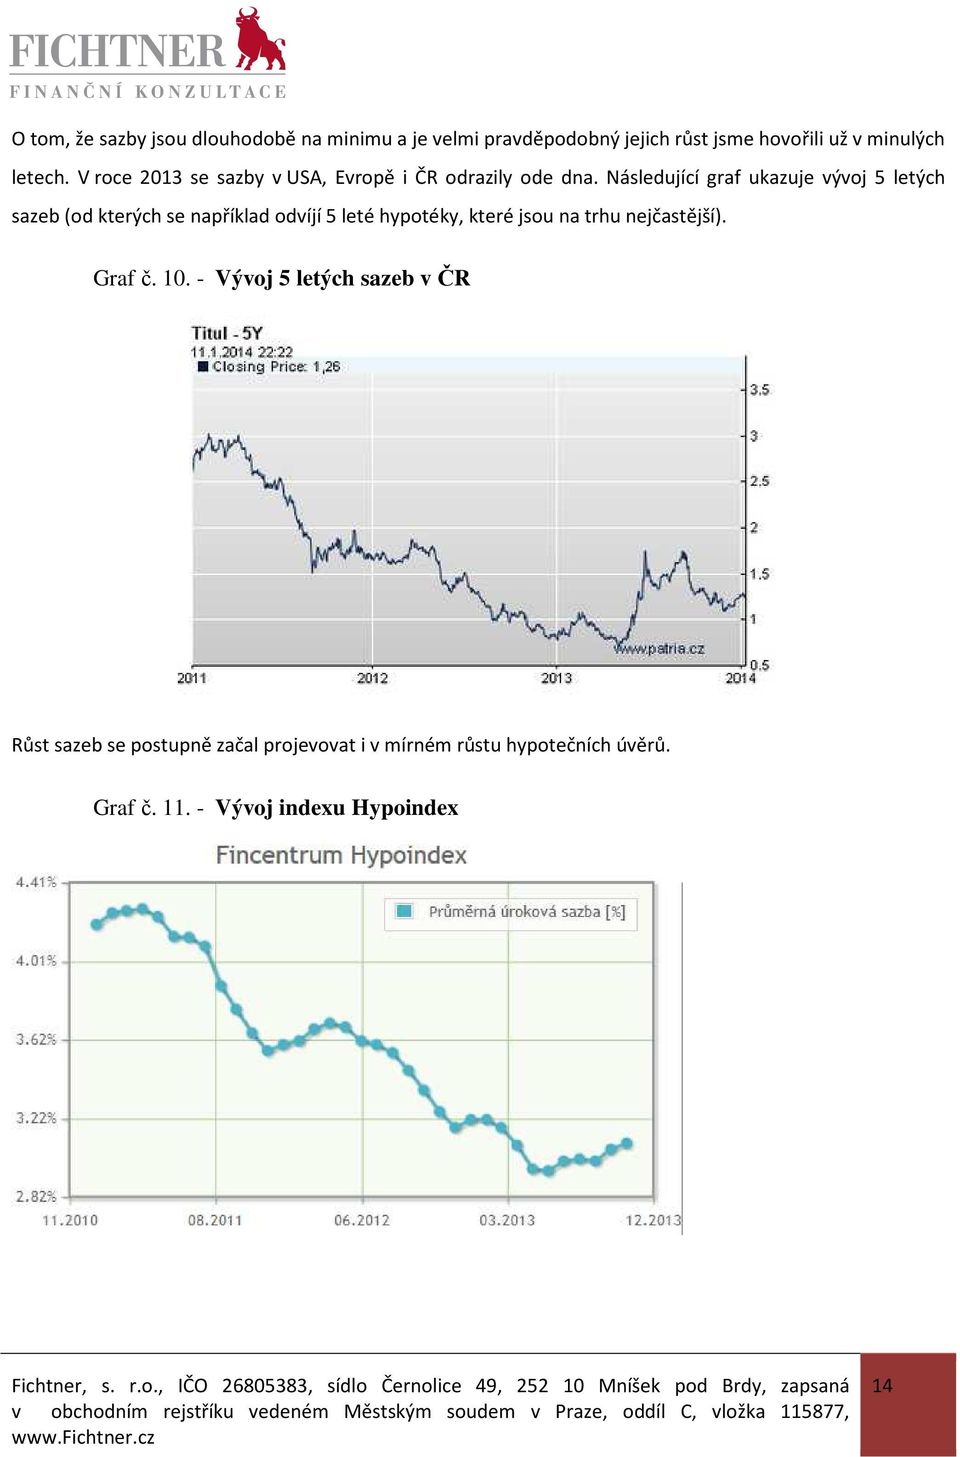 Následující graf ukazuje vývoj 5 letých sazeb (od kterých se například odvíjí 5 leté hypotéky, které jsou na trhu